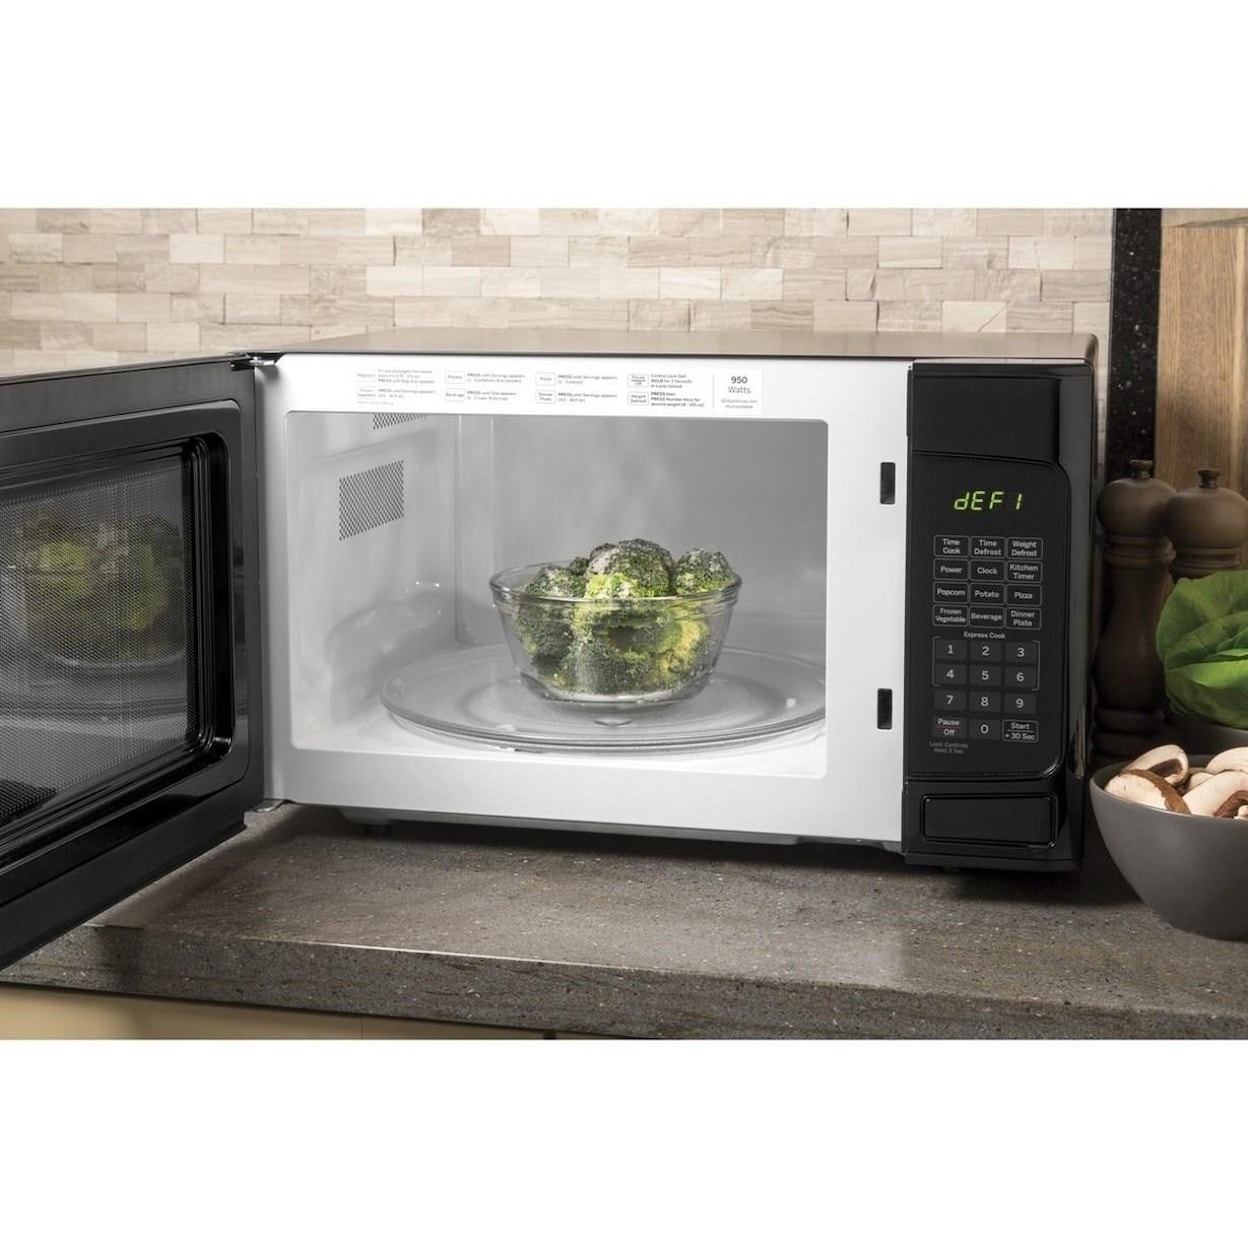 GE Appliances GE Microwaves 1.1 Cu. Ft. Countertop Microwave